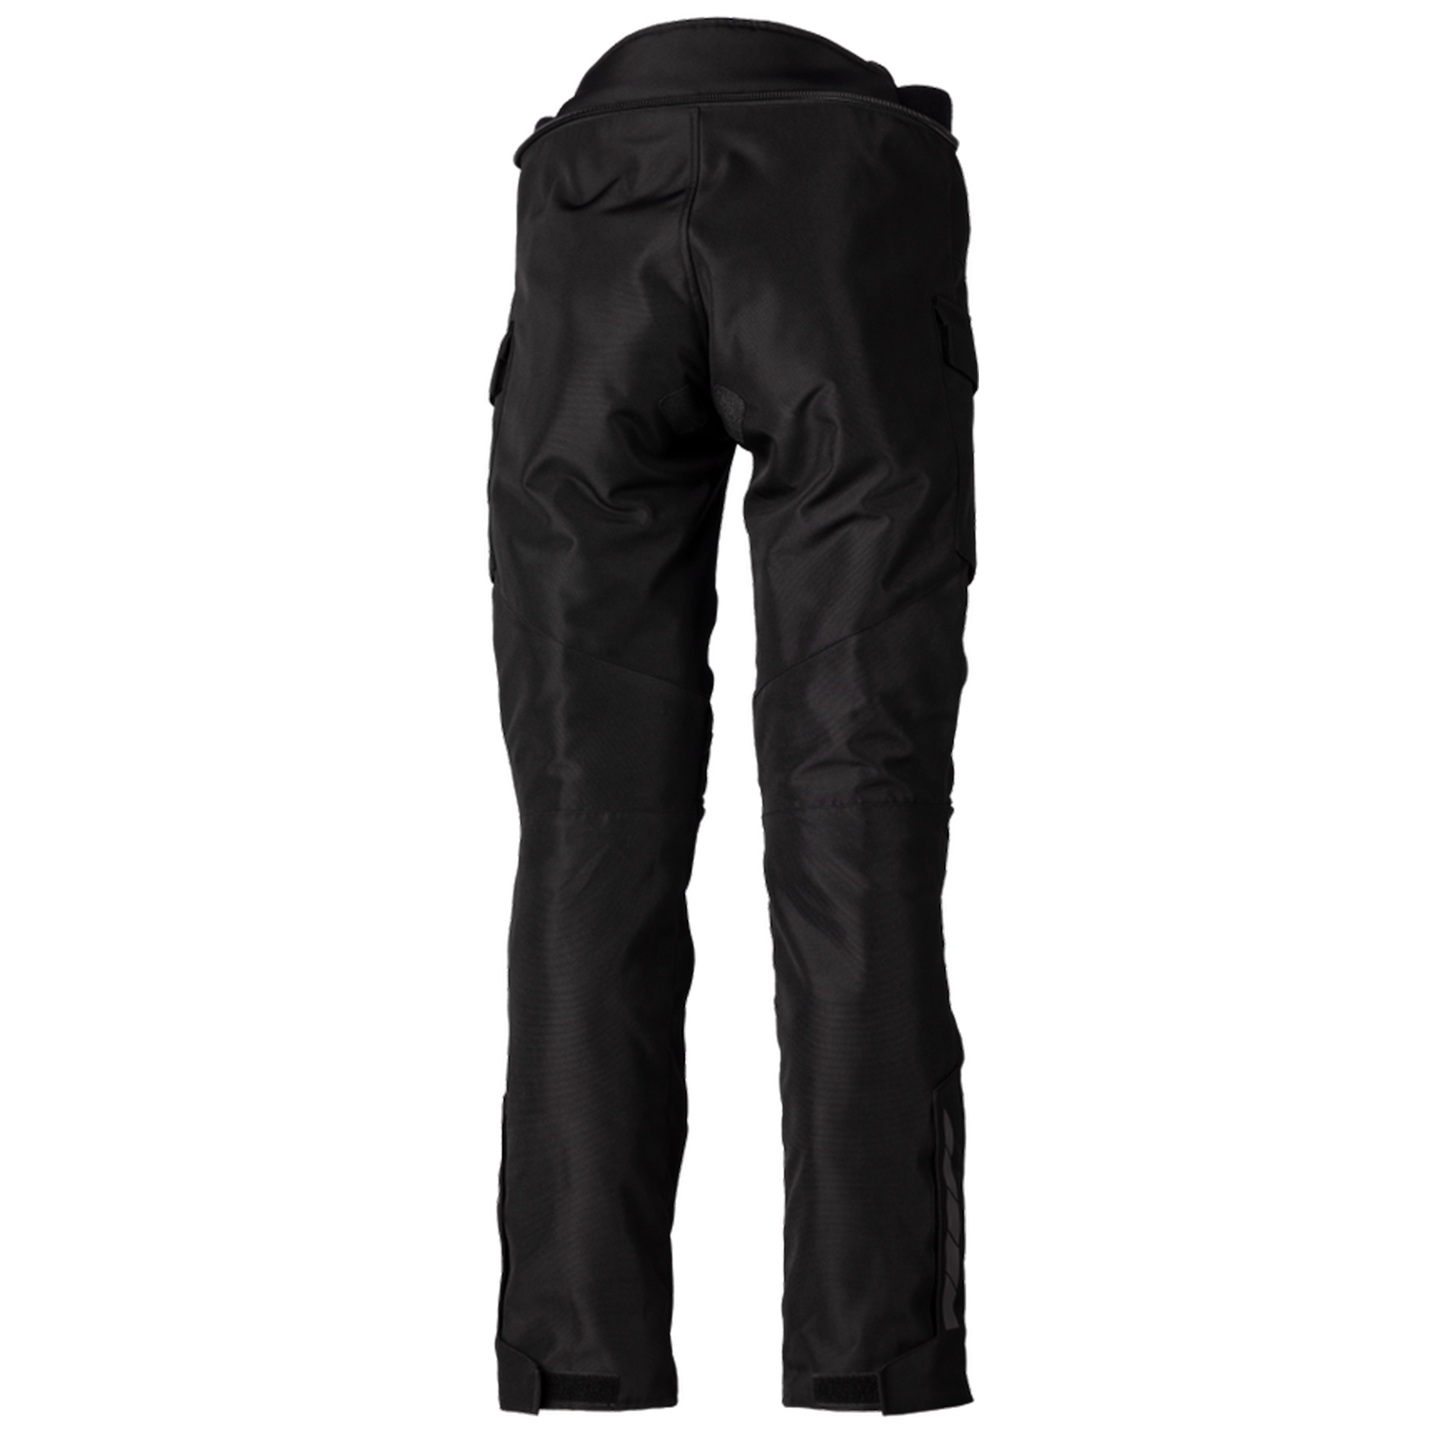 RST Alpha 5 Men's Textile Riding Jean - Short Leg - Black (3120)